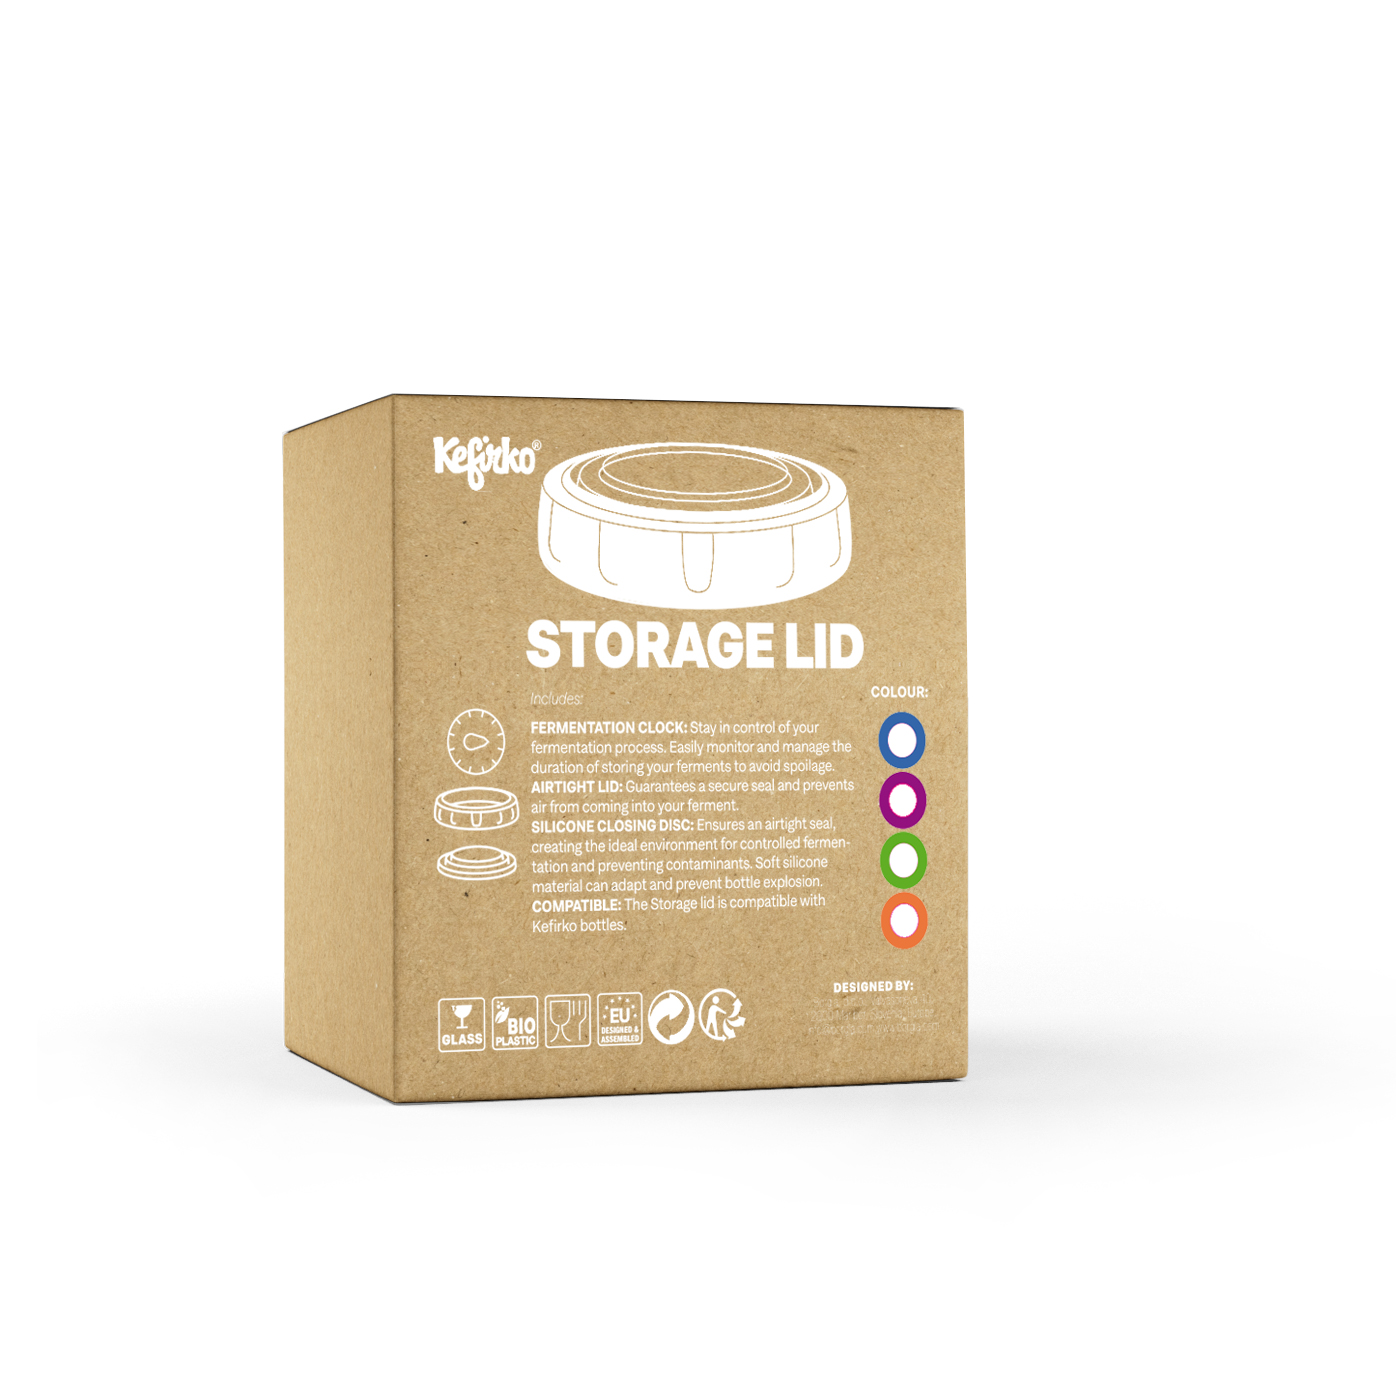 Storage LID packaging